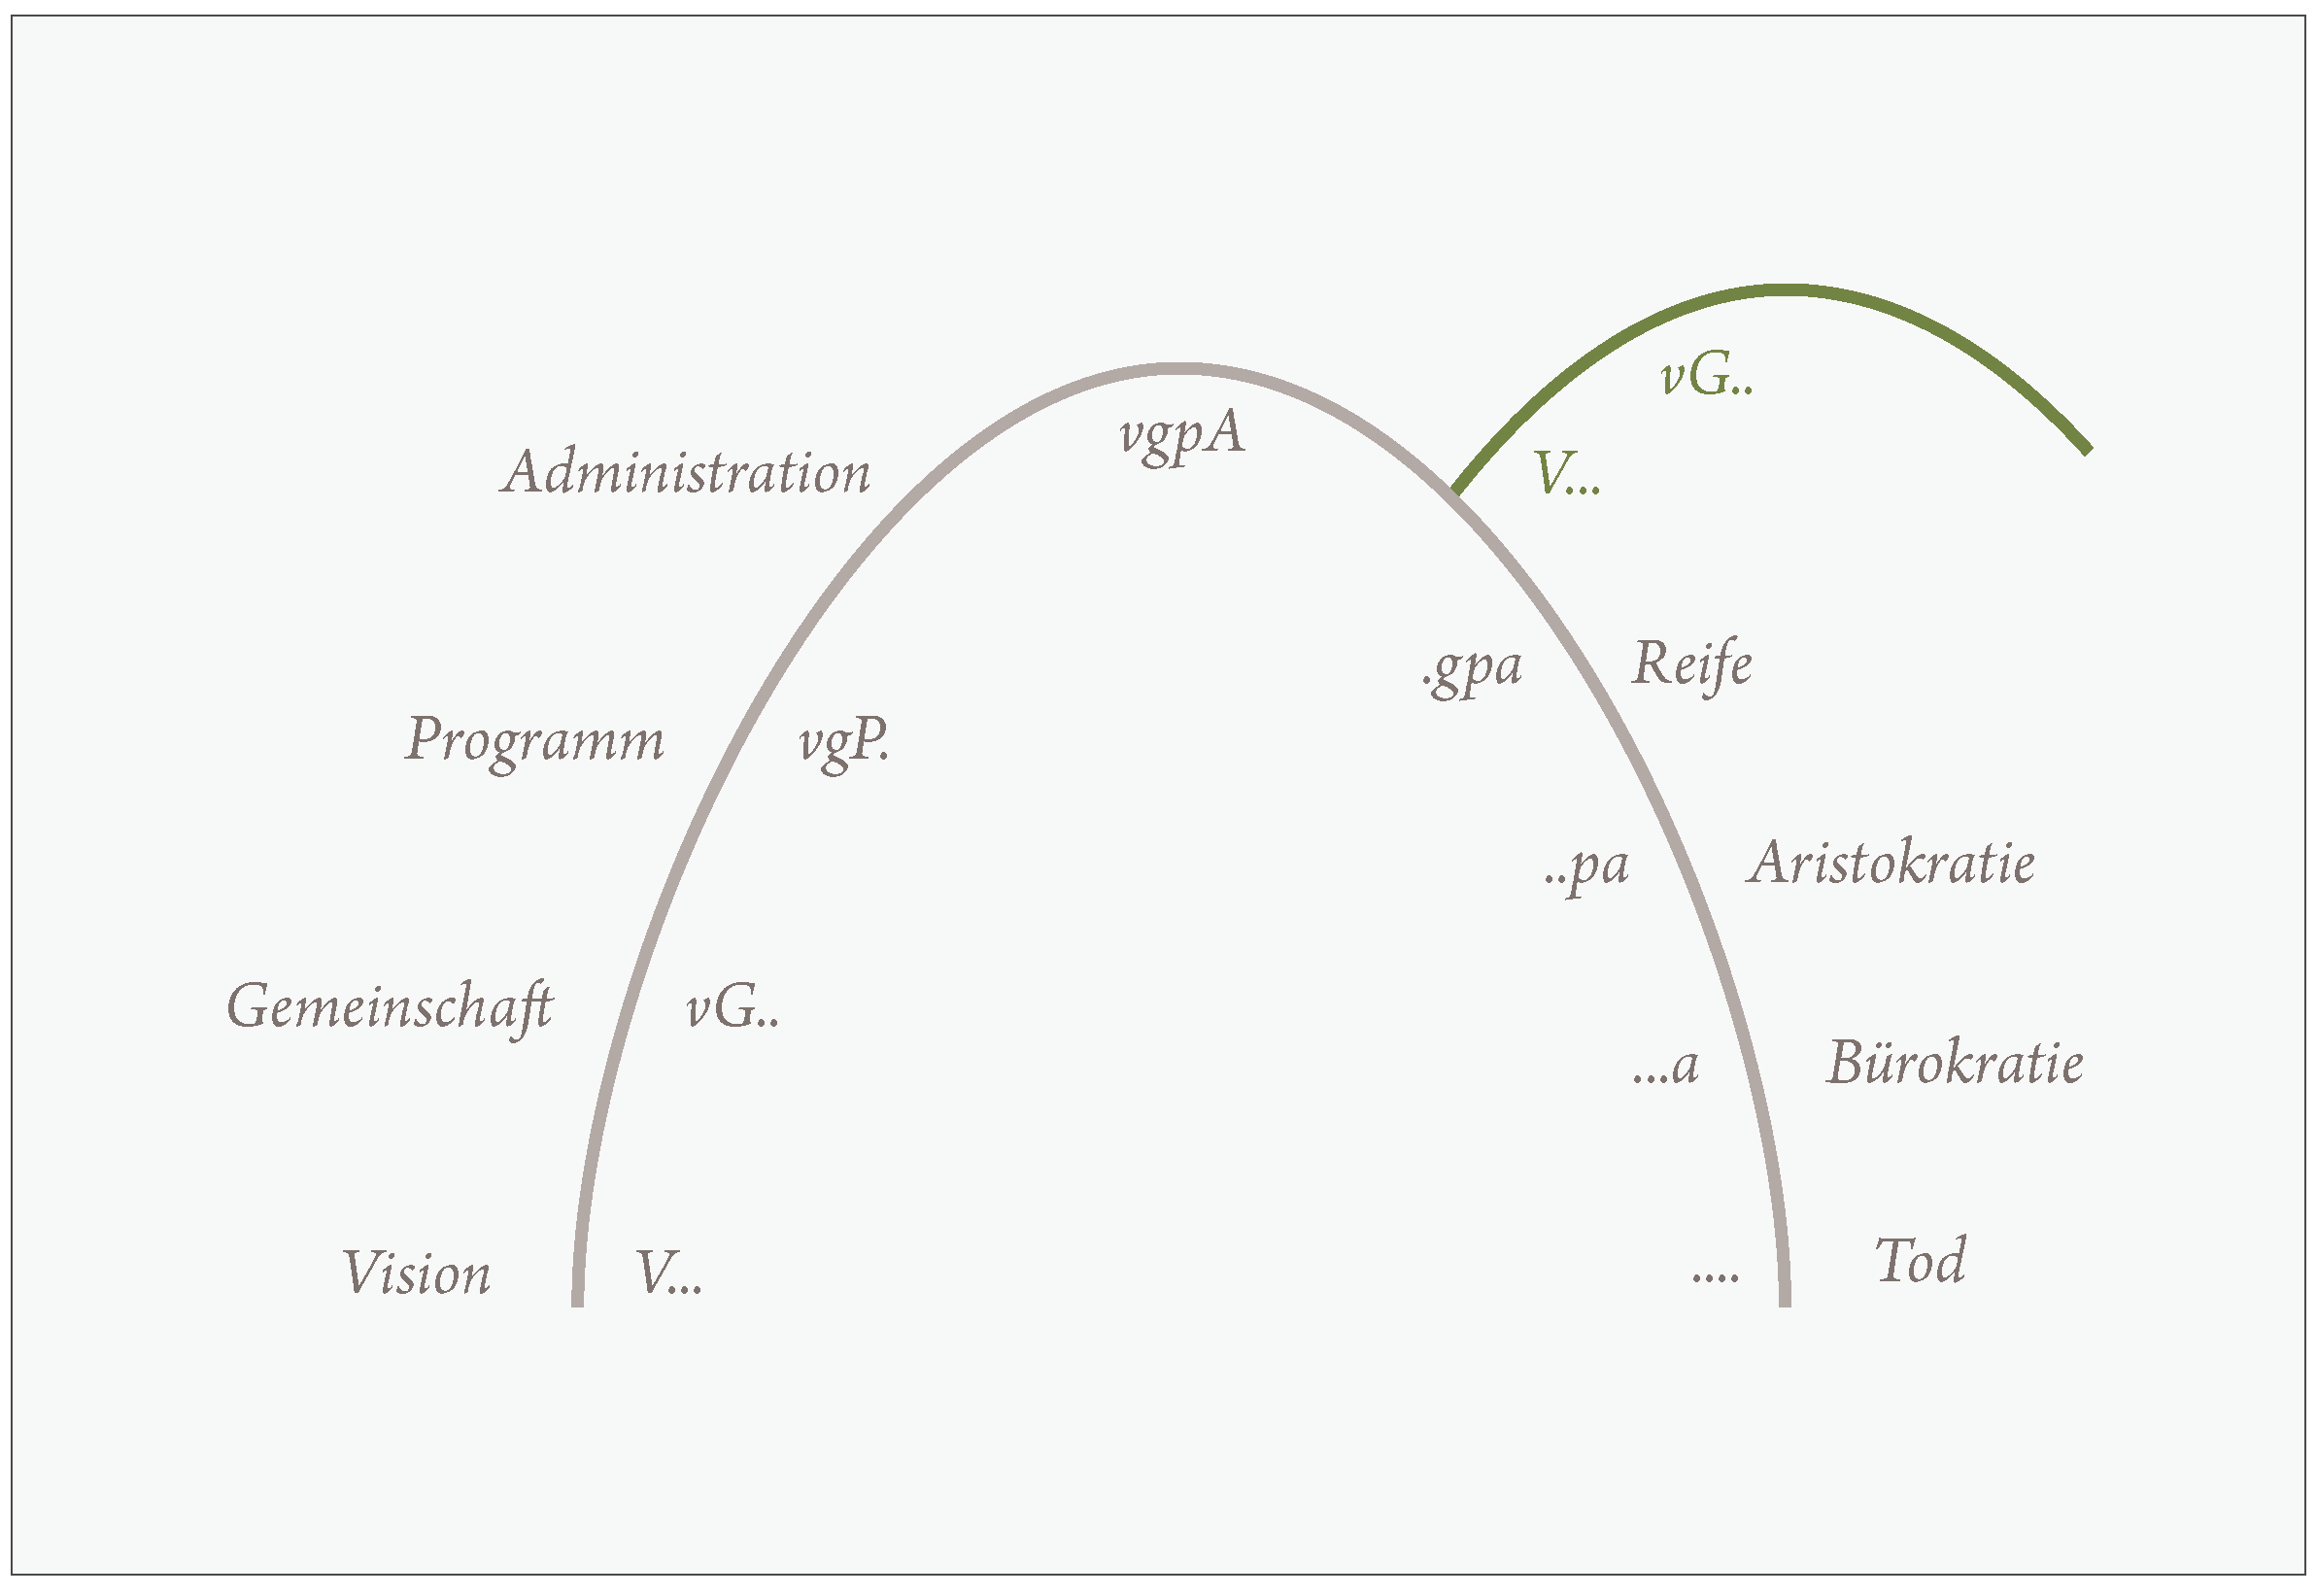 Lebenszyklus von Organisationen und der „Sprungpunkt“ in eine neue Entwicklungskurve